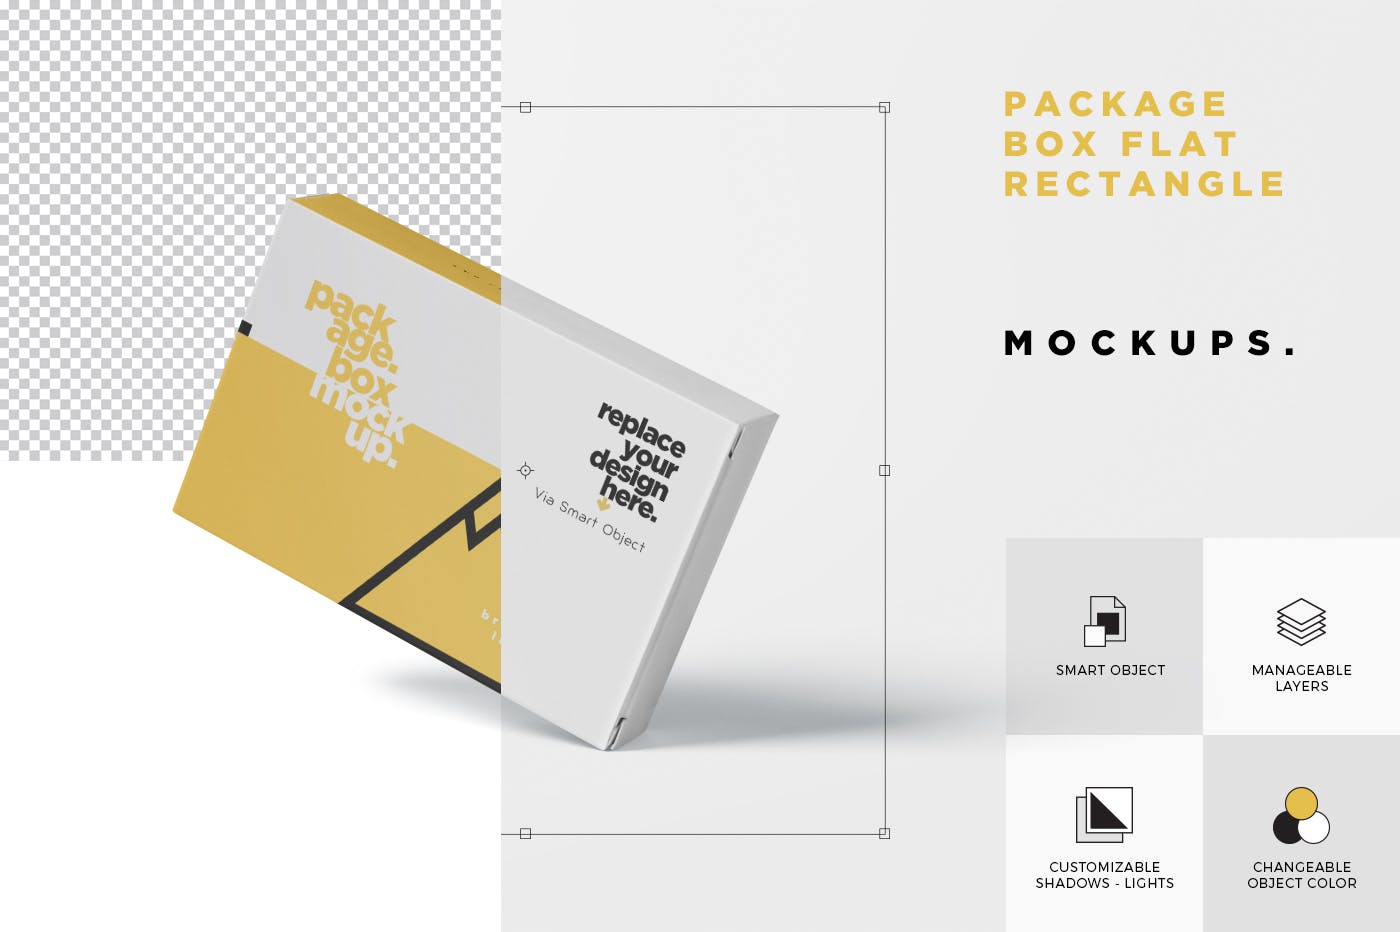 扑克牌大小扁平包装纸盒外观设计第一素材精选模板 Package Box Mock-Up – Wide – Flat Rectangle Shape插图(6)